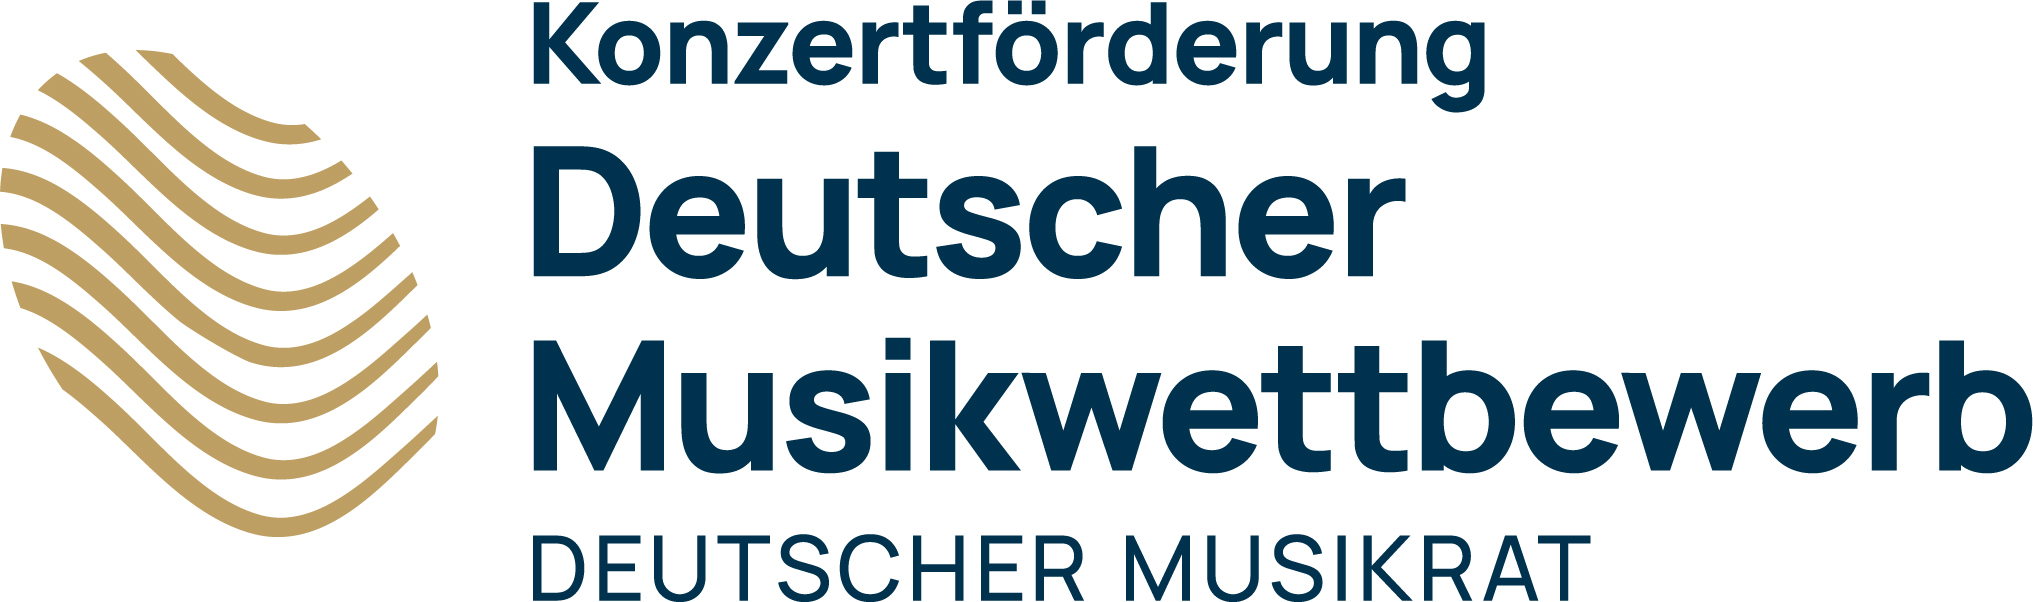 Musikrat Logo Förderung